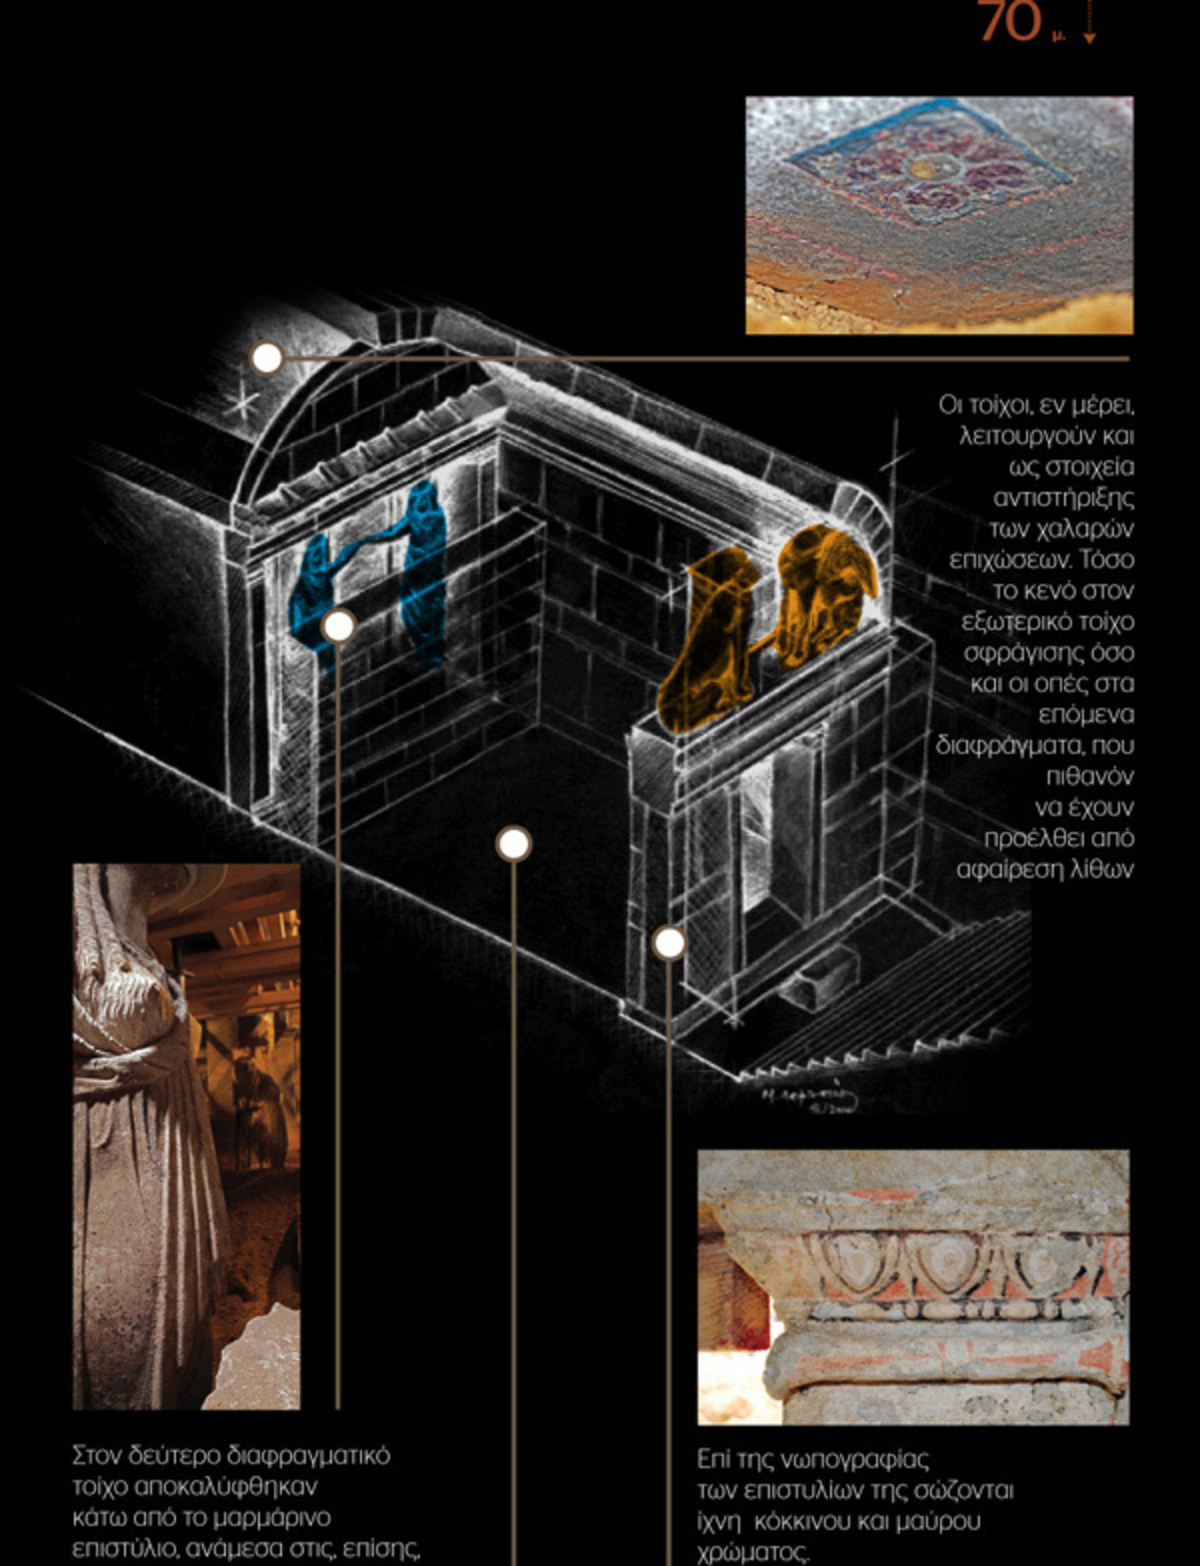 Αμφίπολη: Όλα όσα πρέπει να ξέρετε μέσα από ένα infographic – Η παραγγελία του Μεγάλου Αλεξάνδρου για τον Ηφαιστίωνα